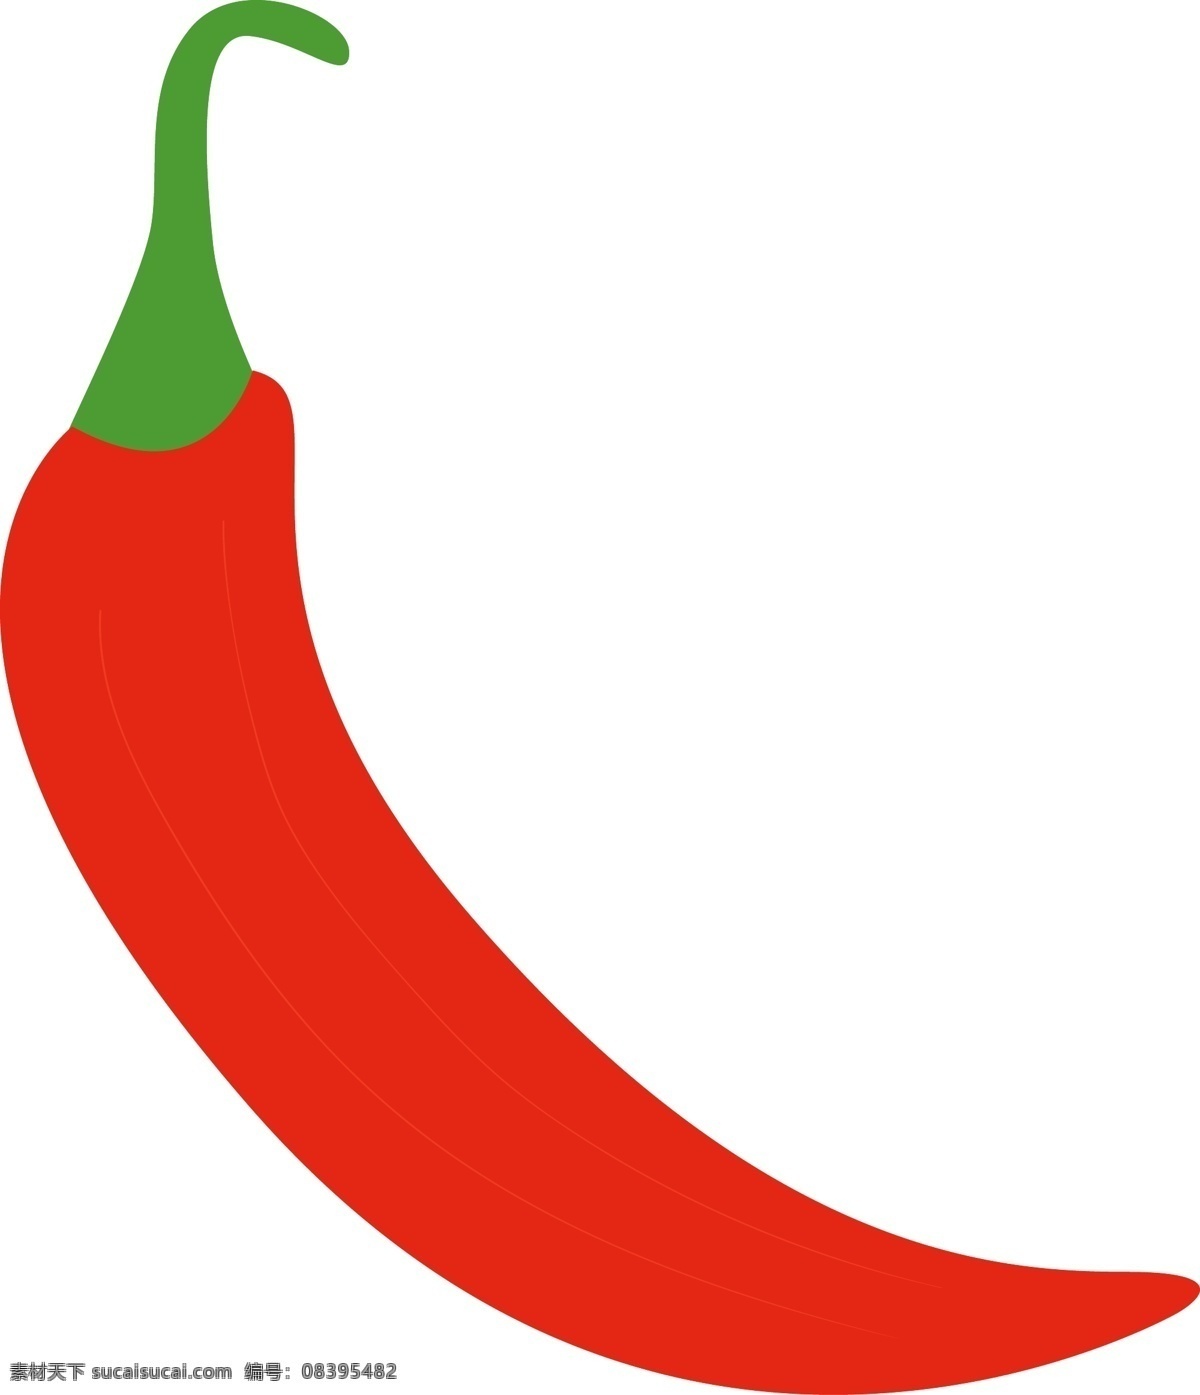 夏季 蔬果 蔬菜 小辣椒 图标 野菜 美味的蔬菜 卡通图标 矢量图 免扣装饰 手绘图标 图形